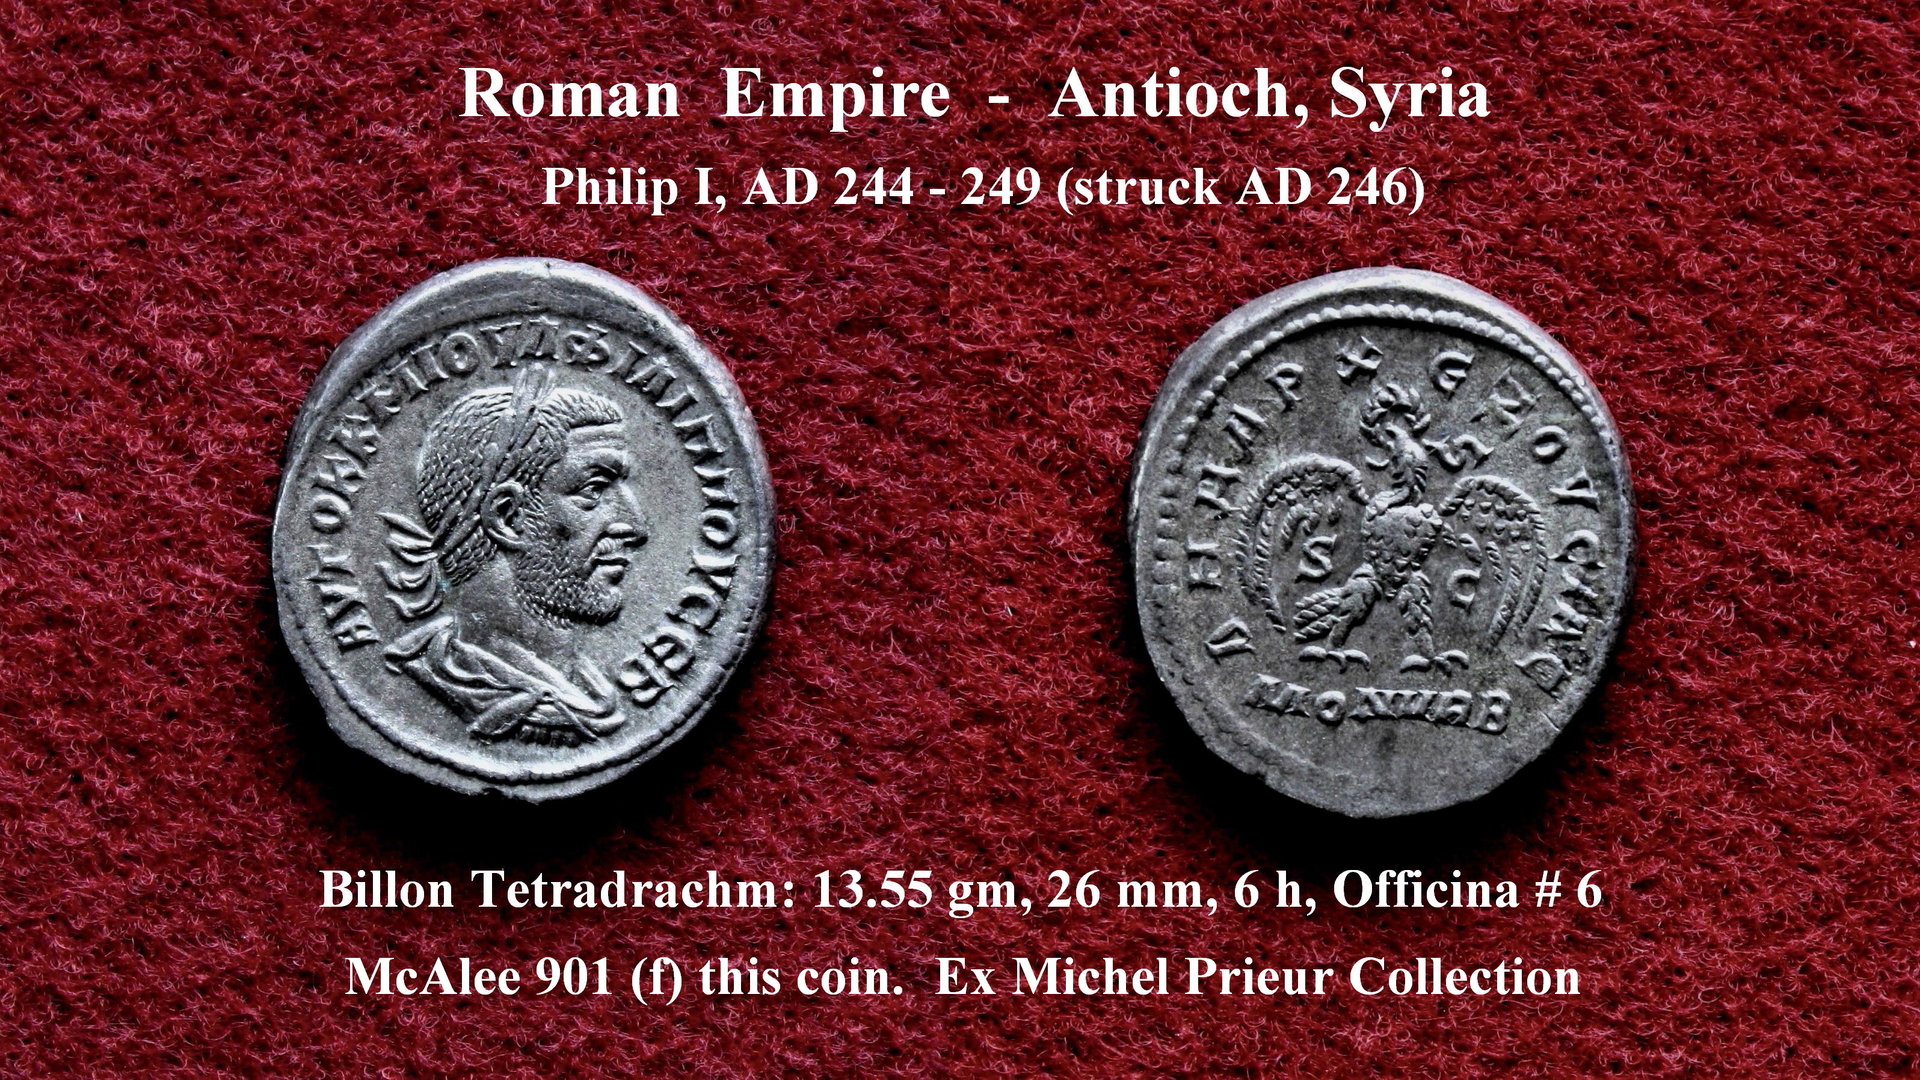 Philip I, Tet, c. AD 246 (2).jpg